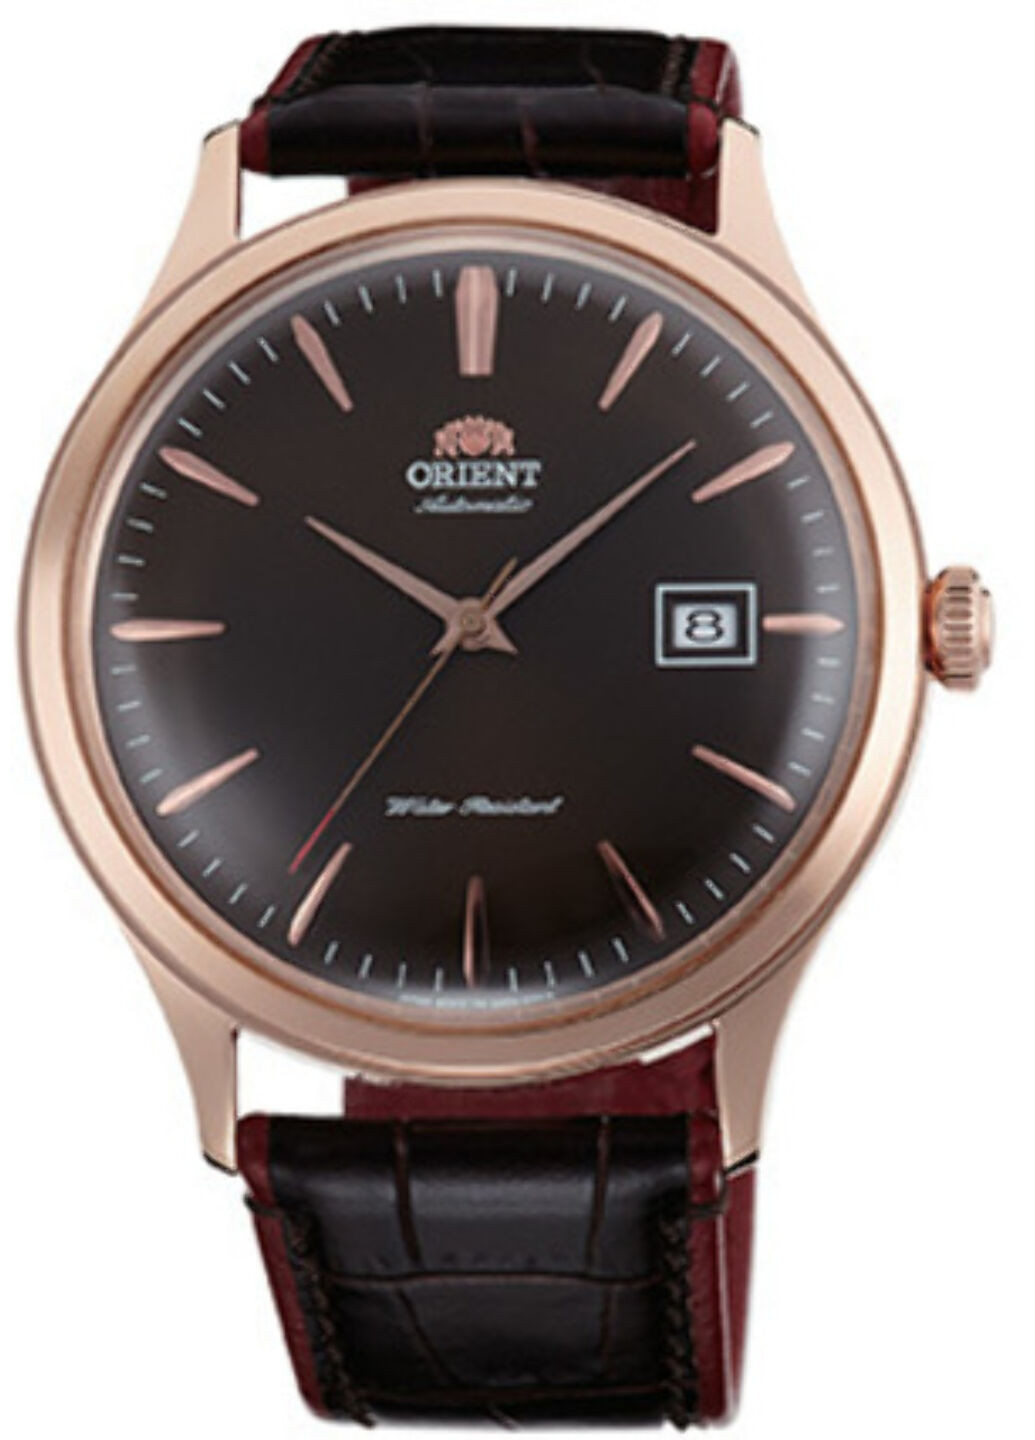 Часы наручные Orient fac08001t0 (250350984)